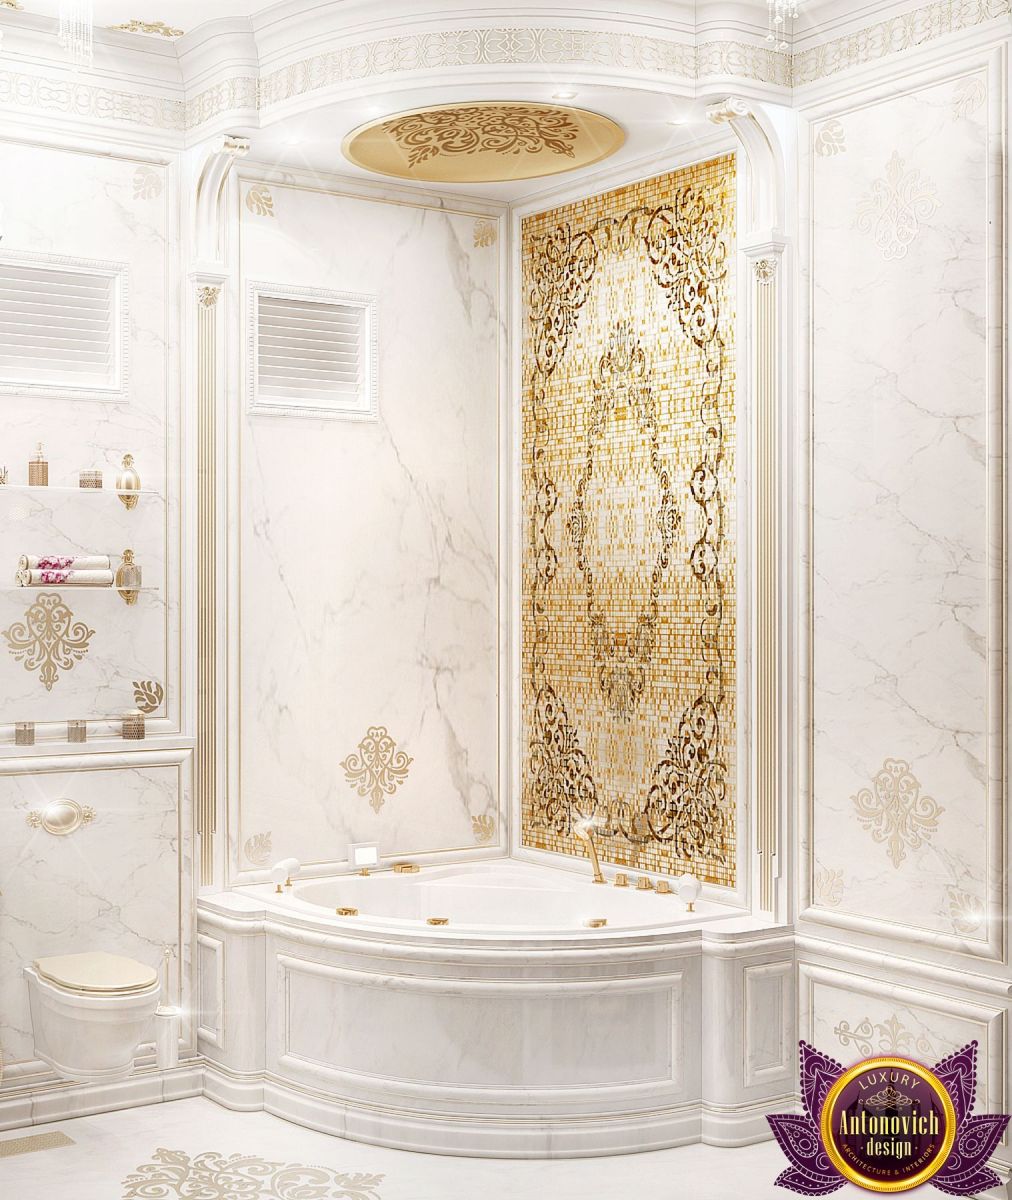 Elegant freestanding bathtub in a modern bathroom